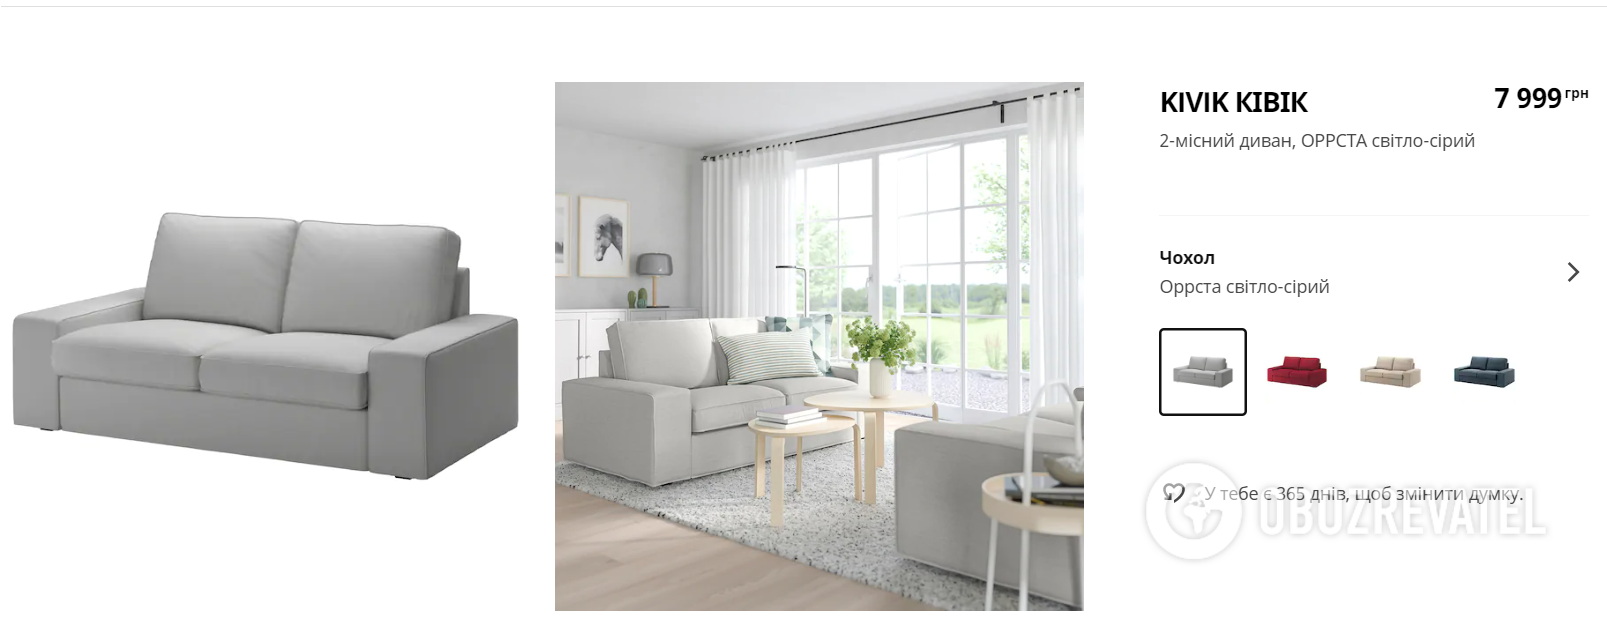 Стоимость товара на официальном сайте IKEA